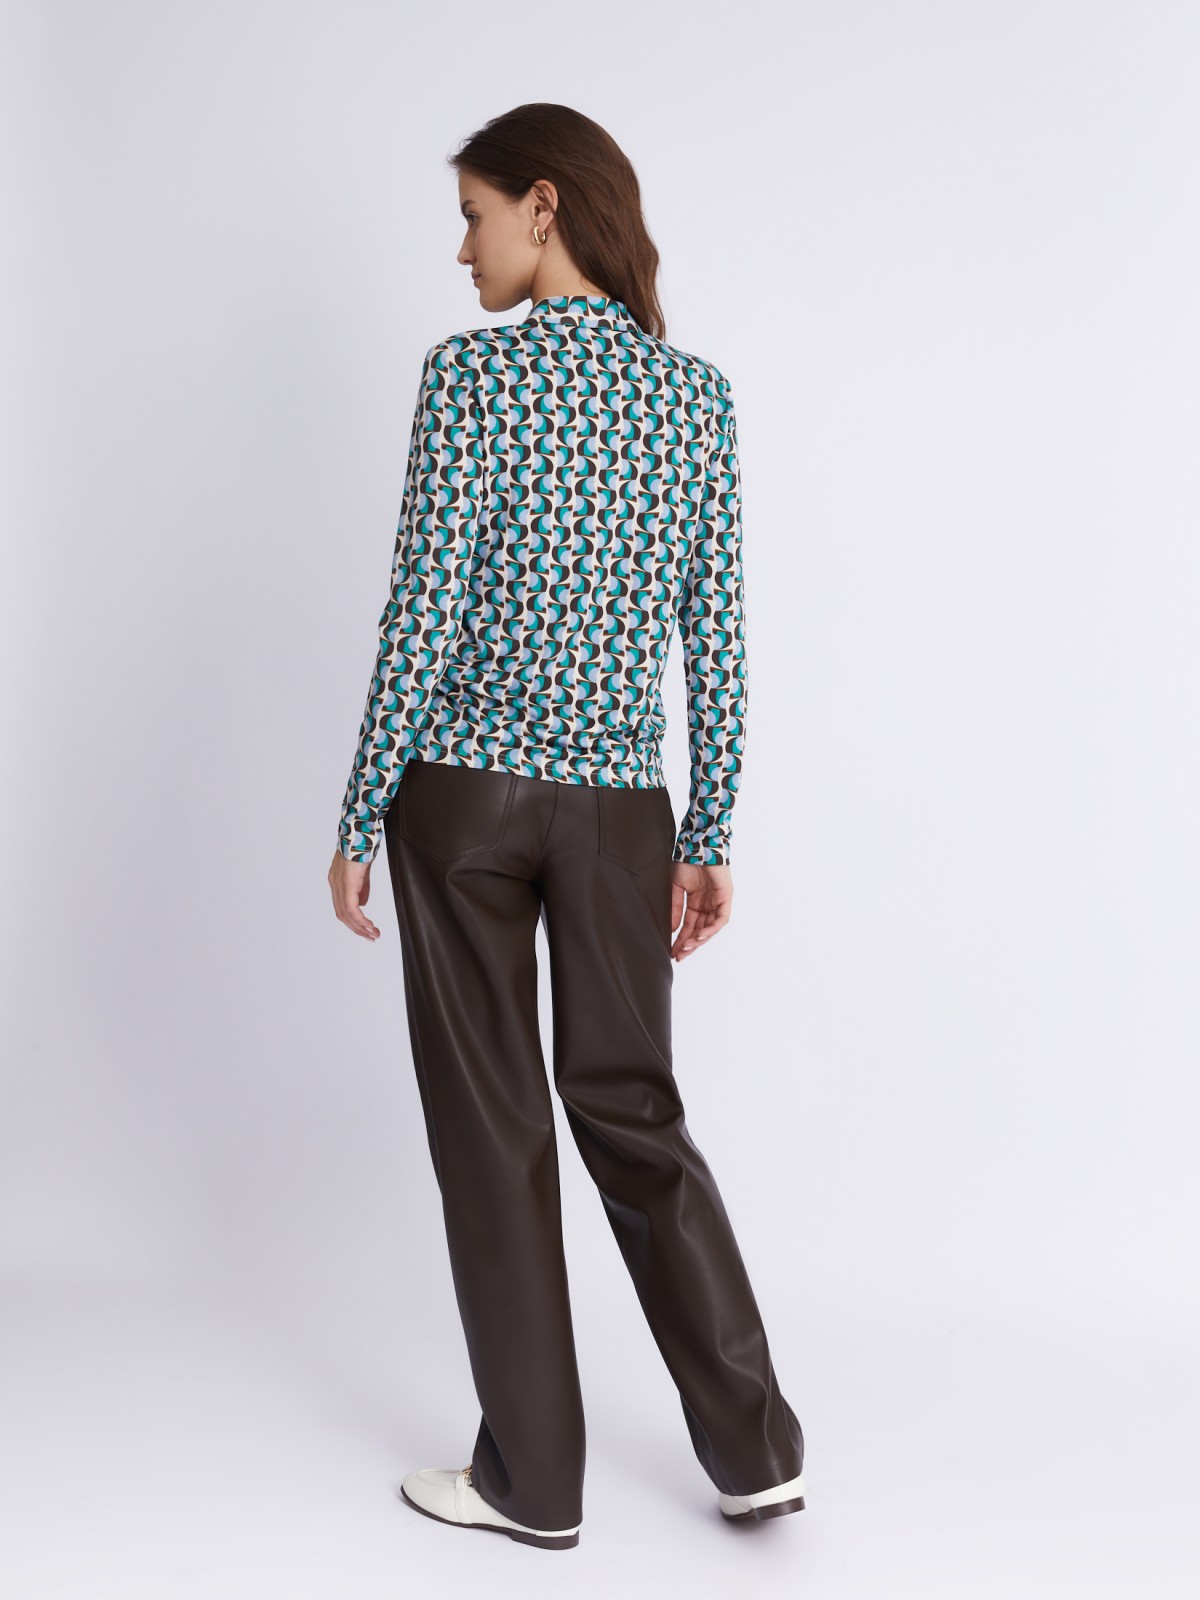 Трикотажная блузка-рубашка с абстрактным геометрическим принтом zolla 023321159233, цвет голубой, размер S - фото 6